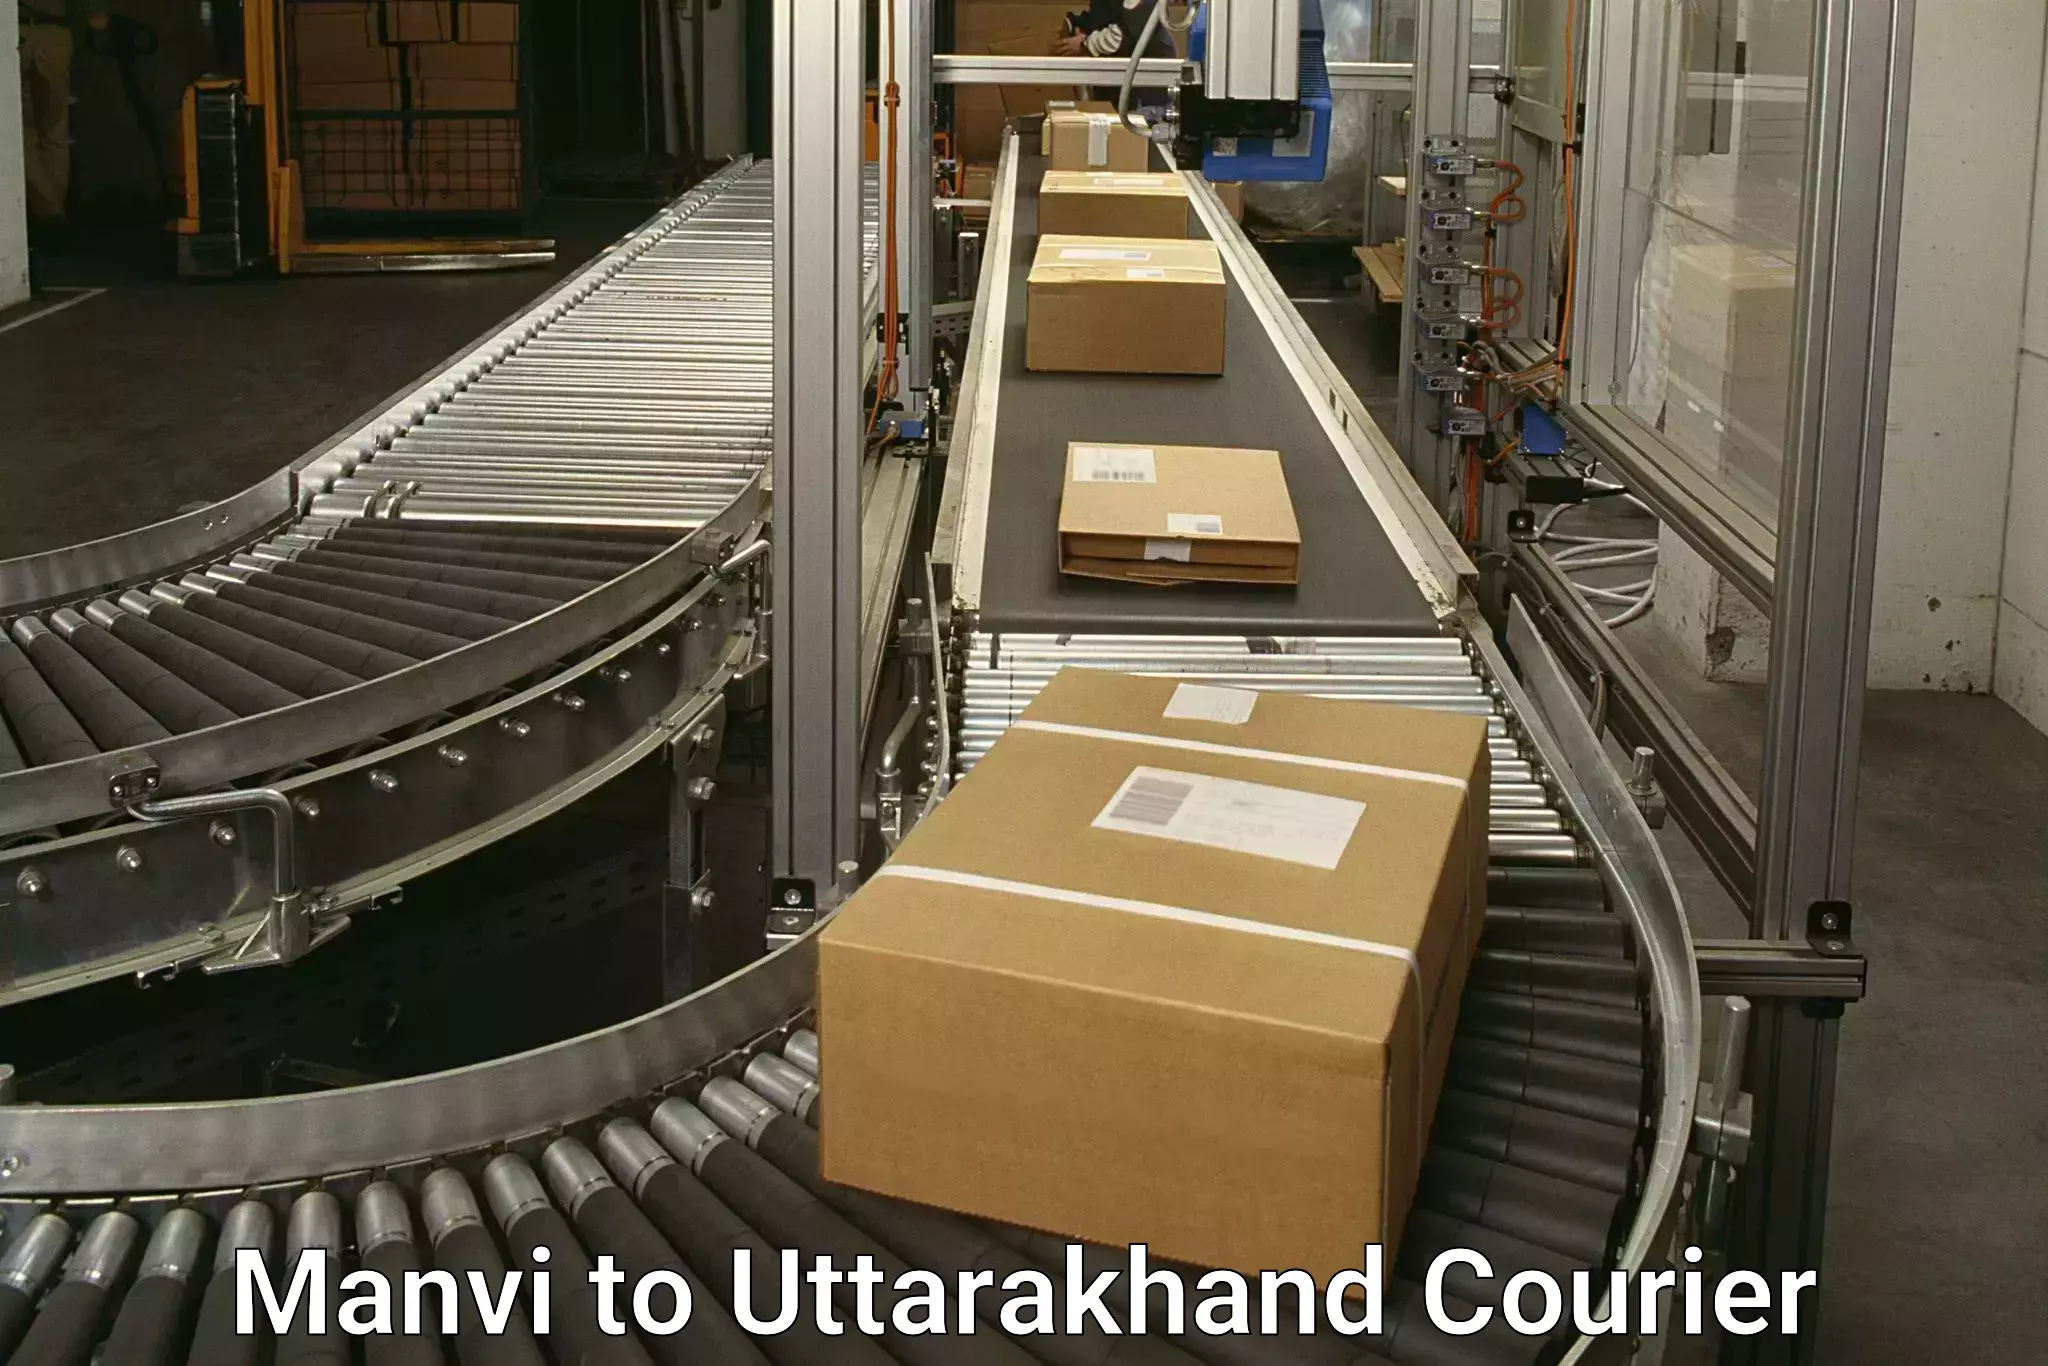 Logistics service provider Manvi to Uttarakhand